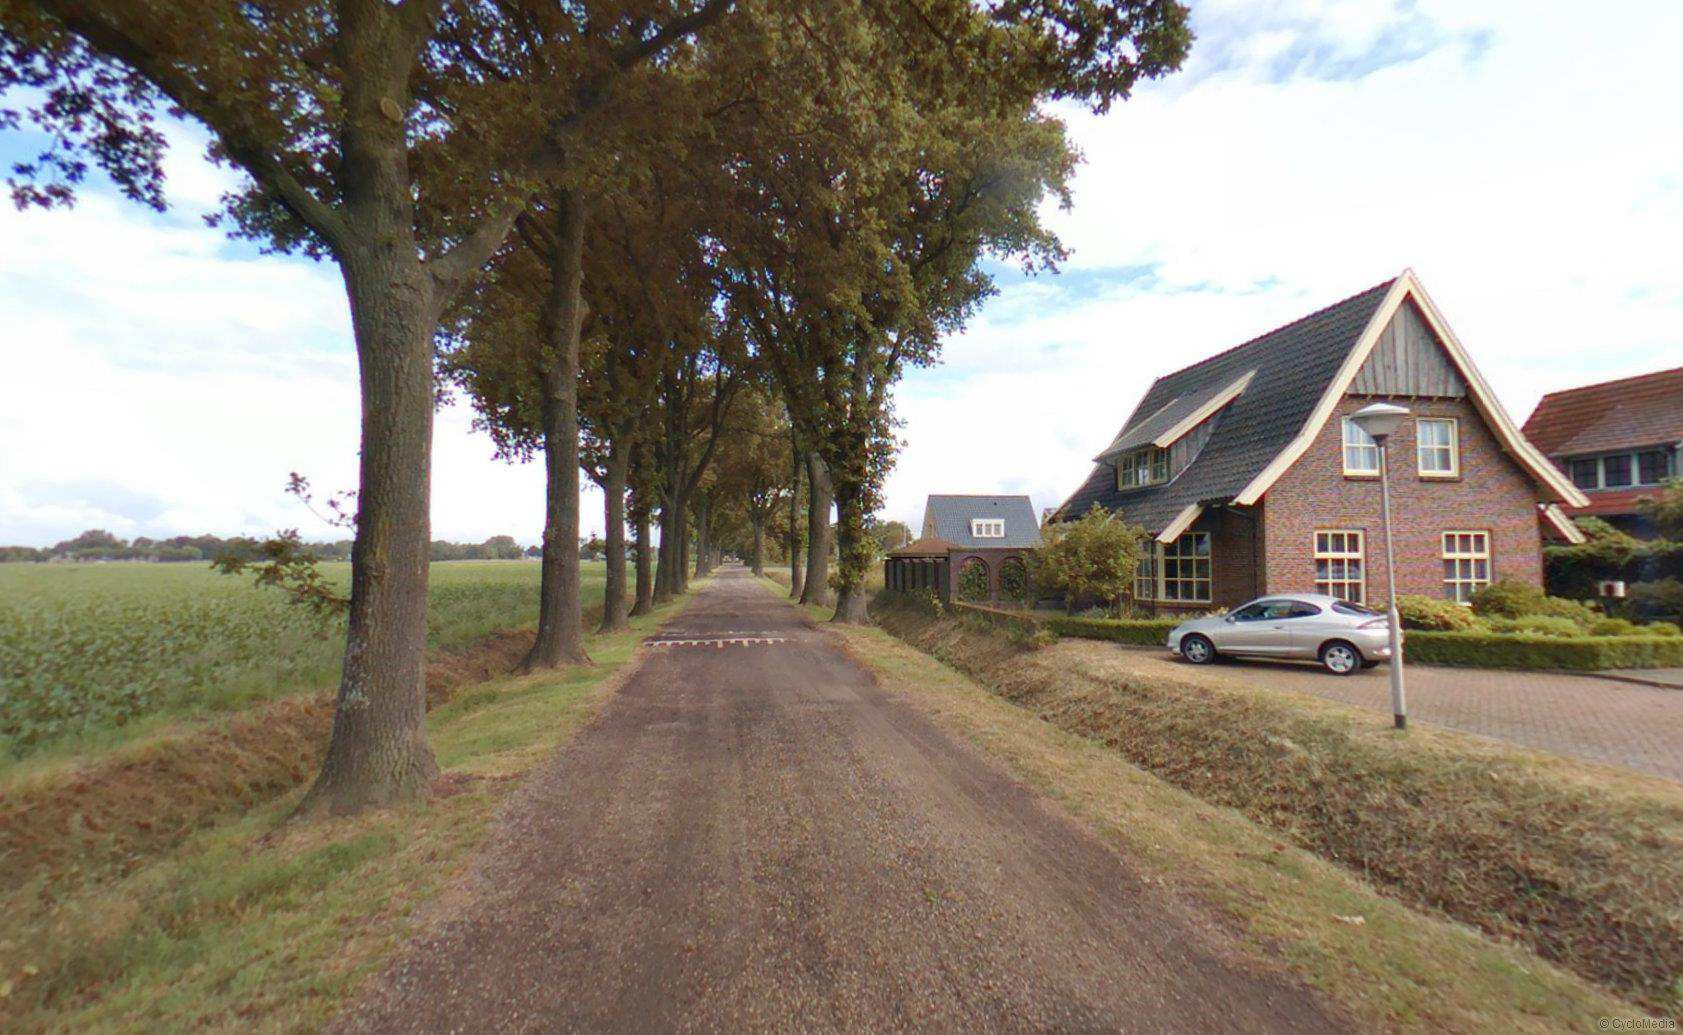 5. Goede west-oostelijke verbinding tussen Hoofdweg en Dalwweg ontbreekt 6. Onoverzichtelijke en onveilige situatie rondom viaduct N36/ Sibculoseweg/Garstweg in combinatie met fietsers 7.